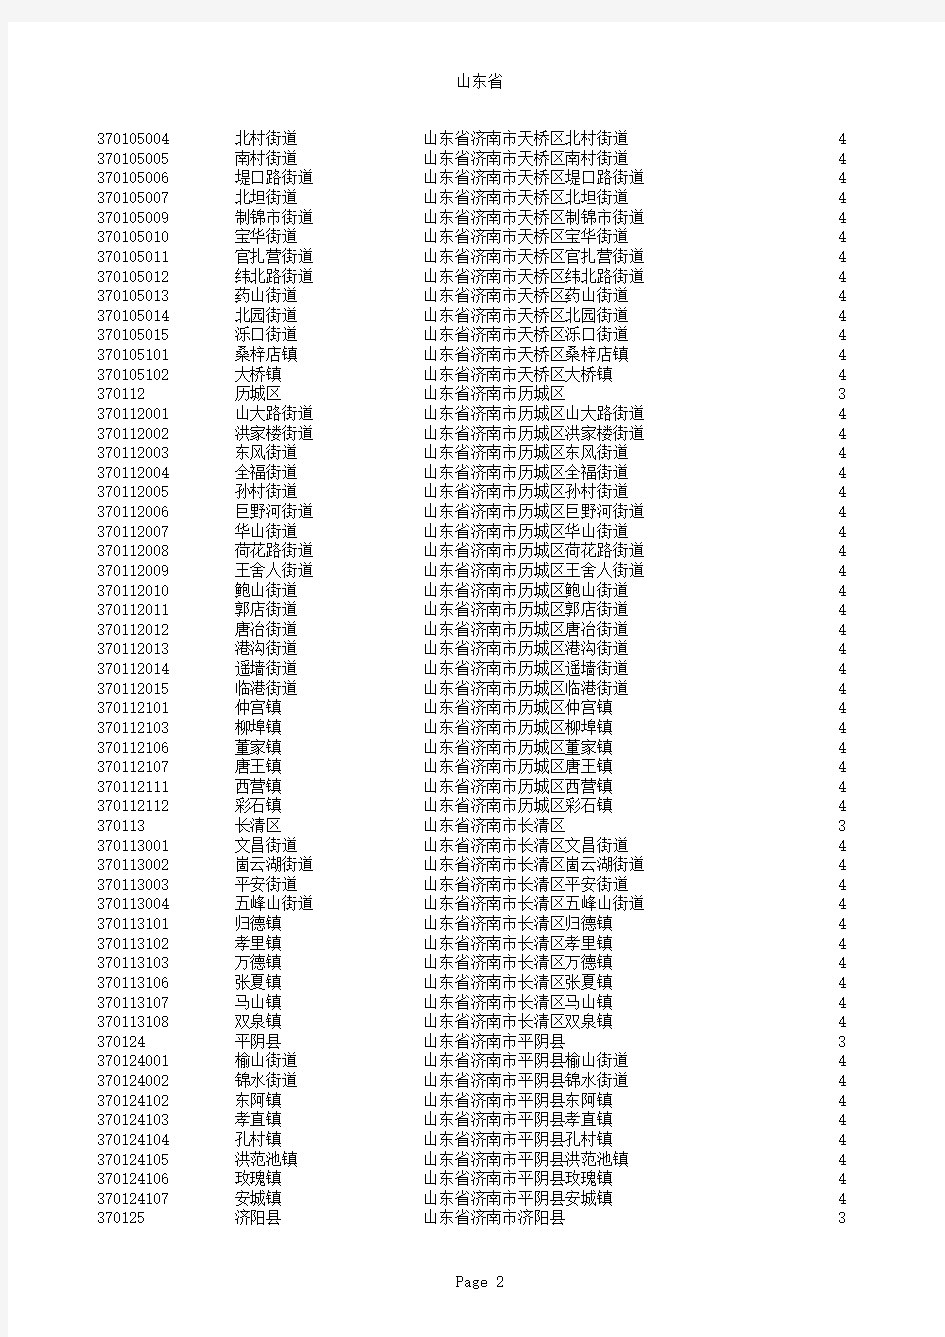 山东省行政区划编码